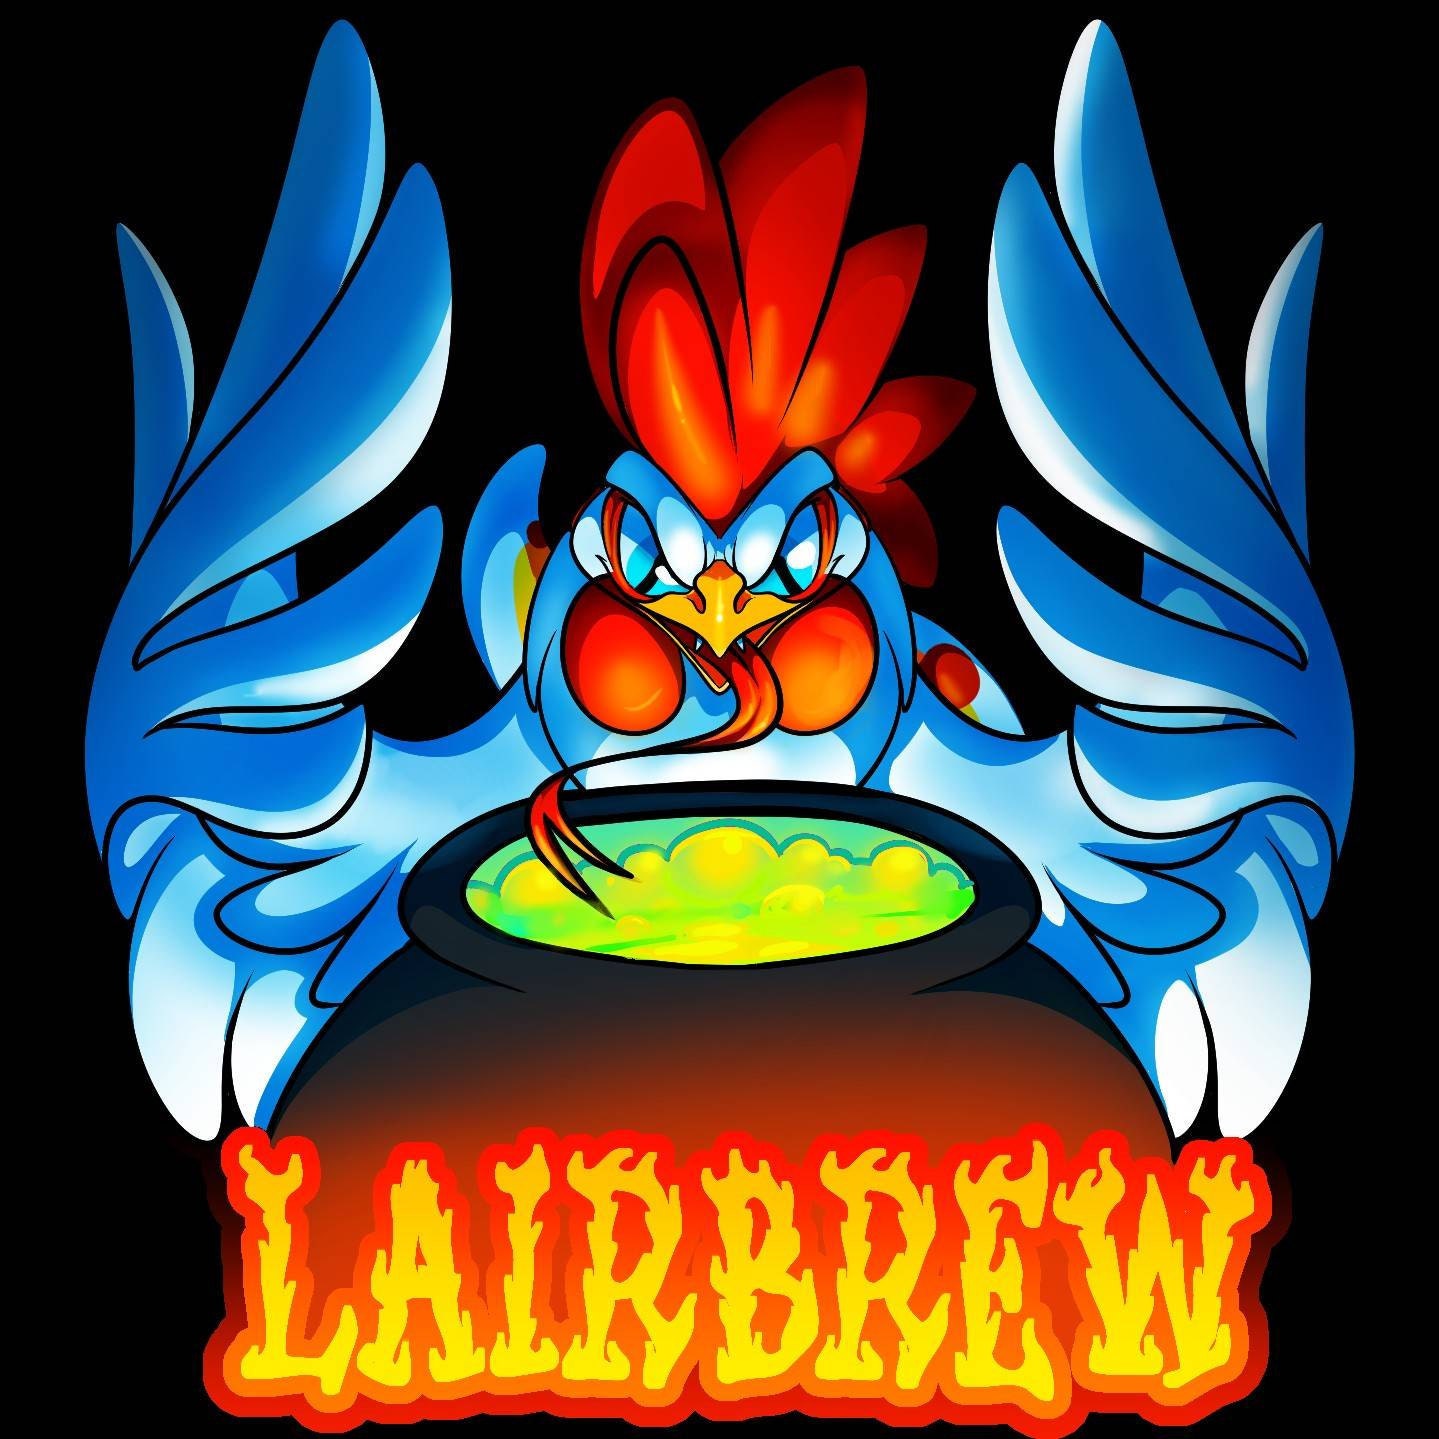 Lairbrew 